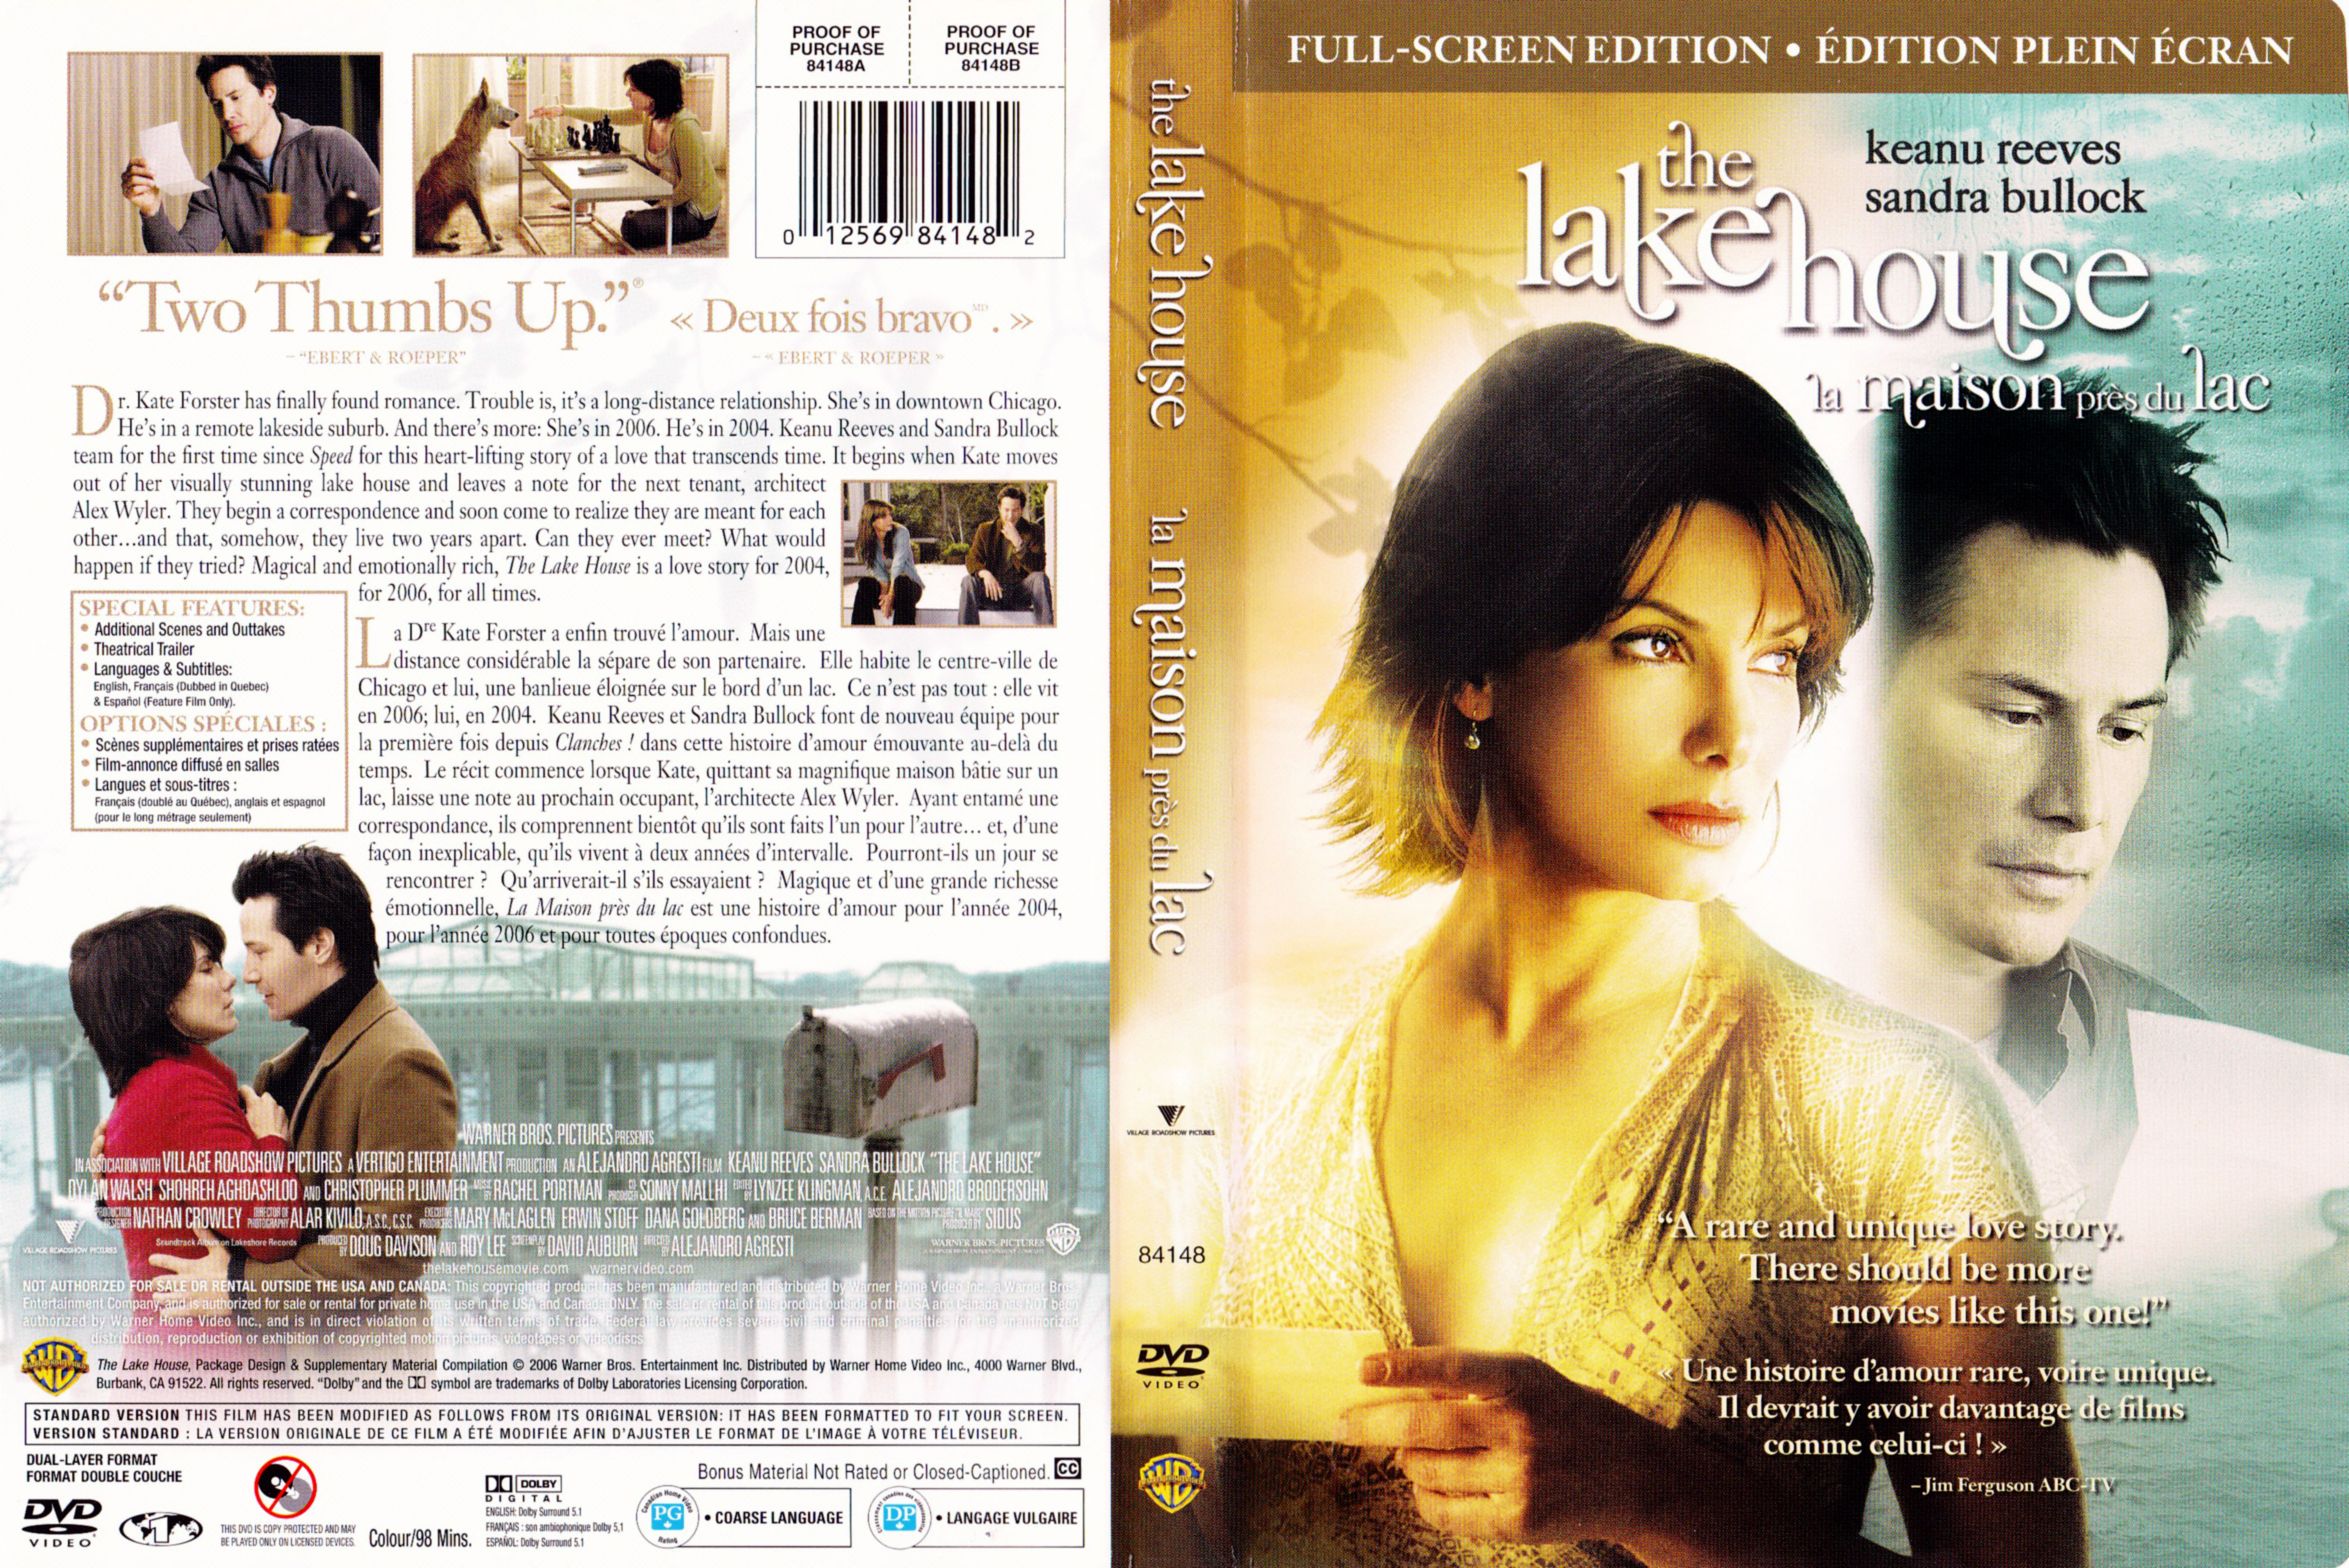 Jaquette DVD de La maison près du lac - The lake house (Canadienne) - Cinéma Passion